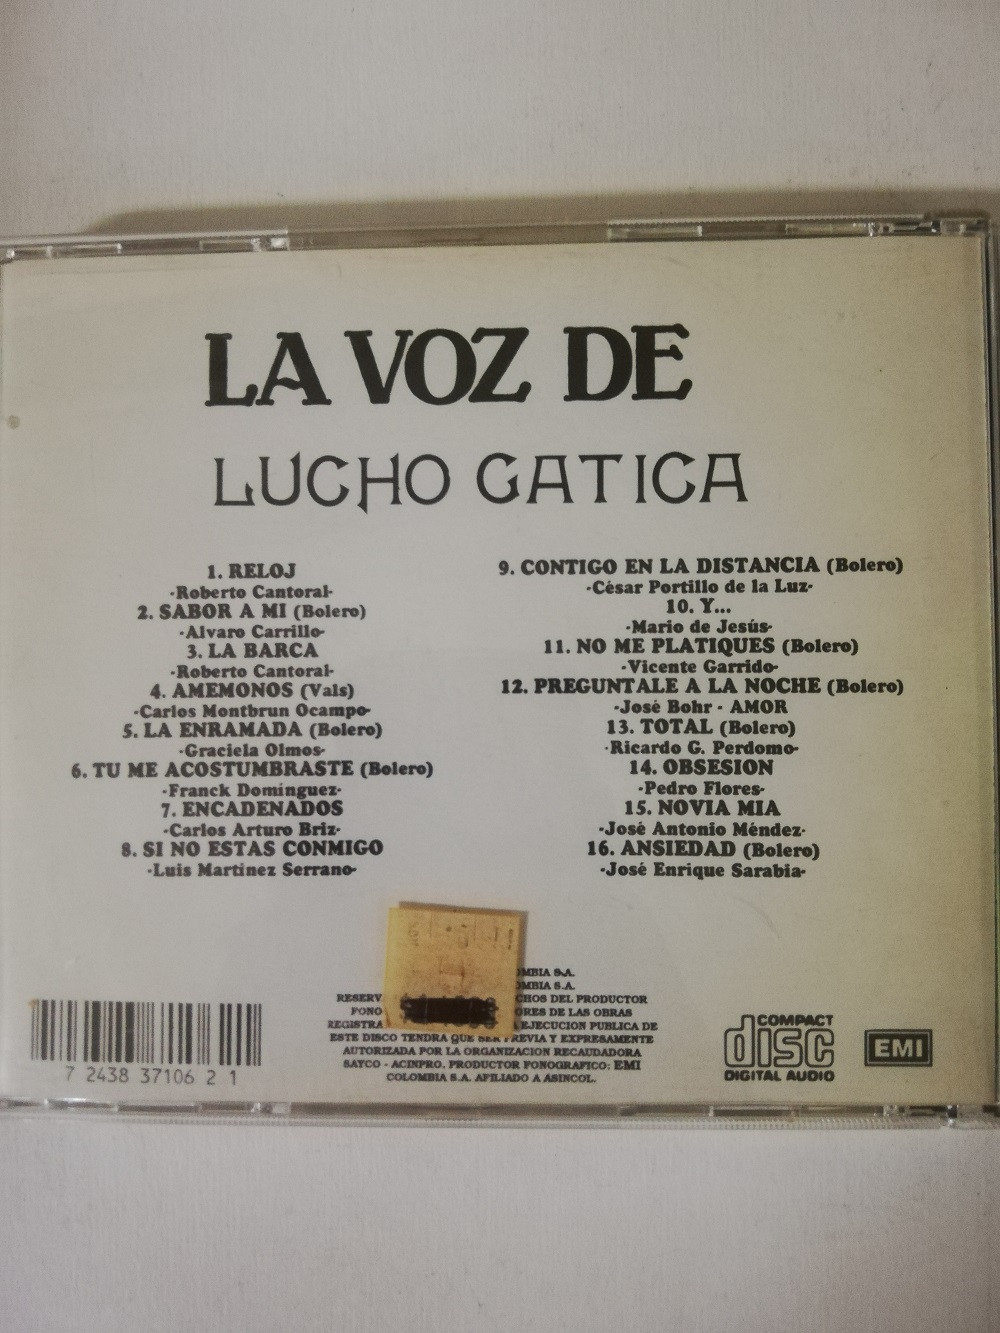 Imagen CD LUCHO GATICA - LA VOZ DE LUCHO GATICA 2